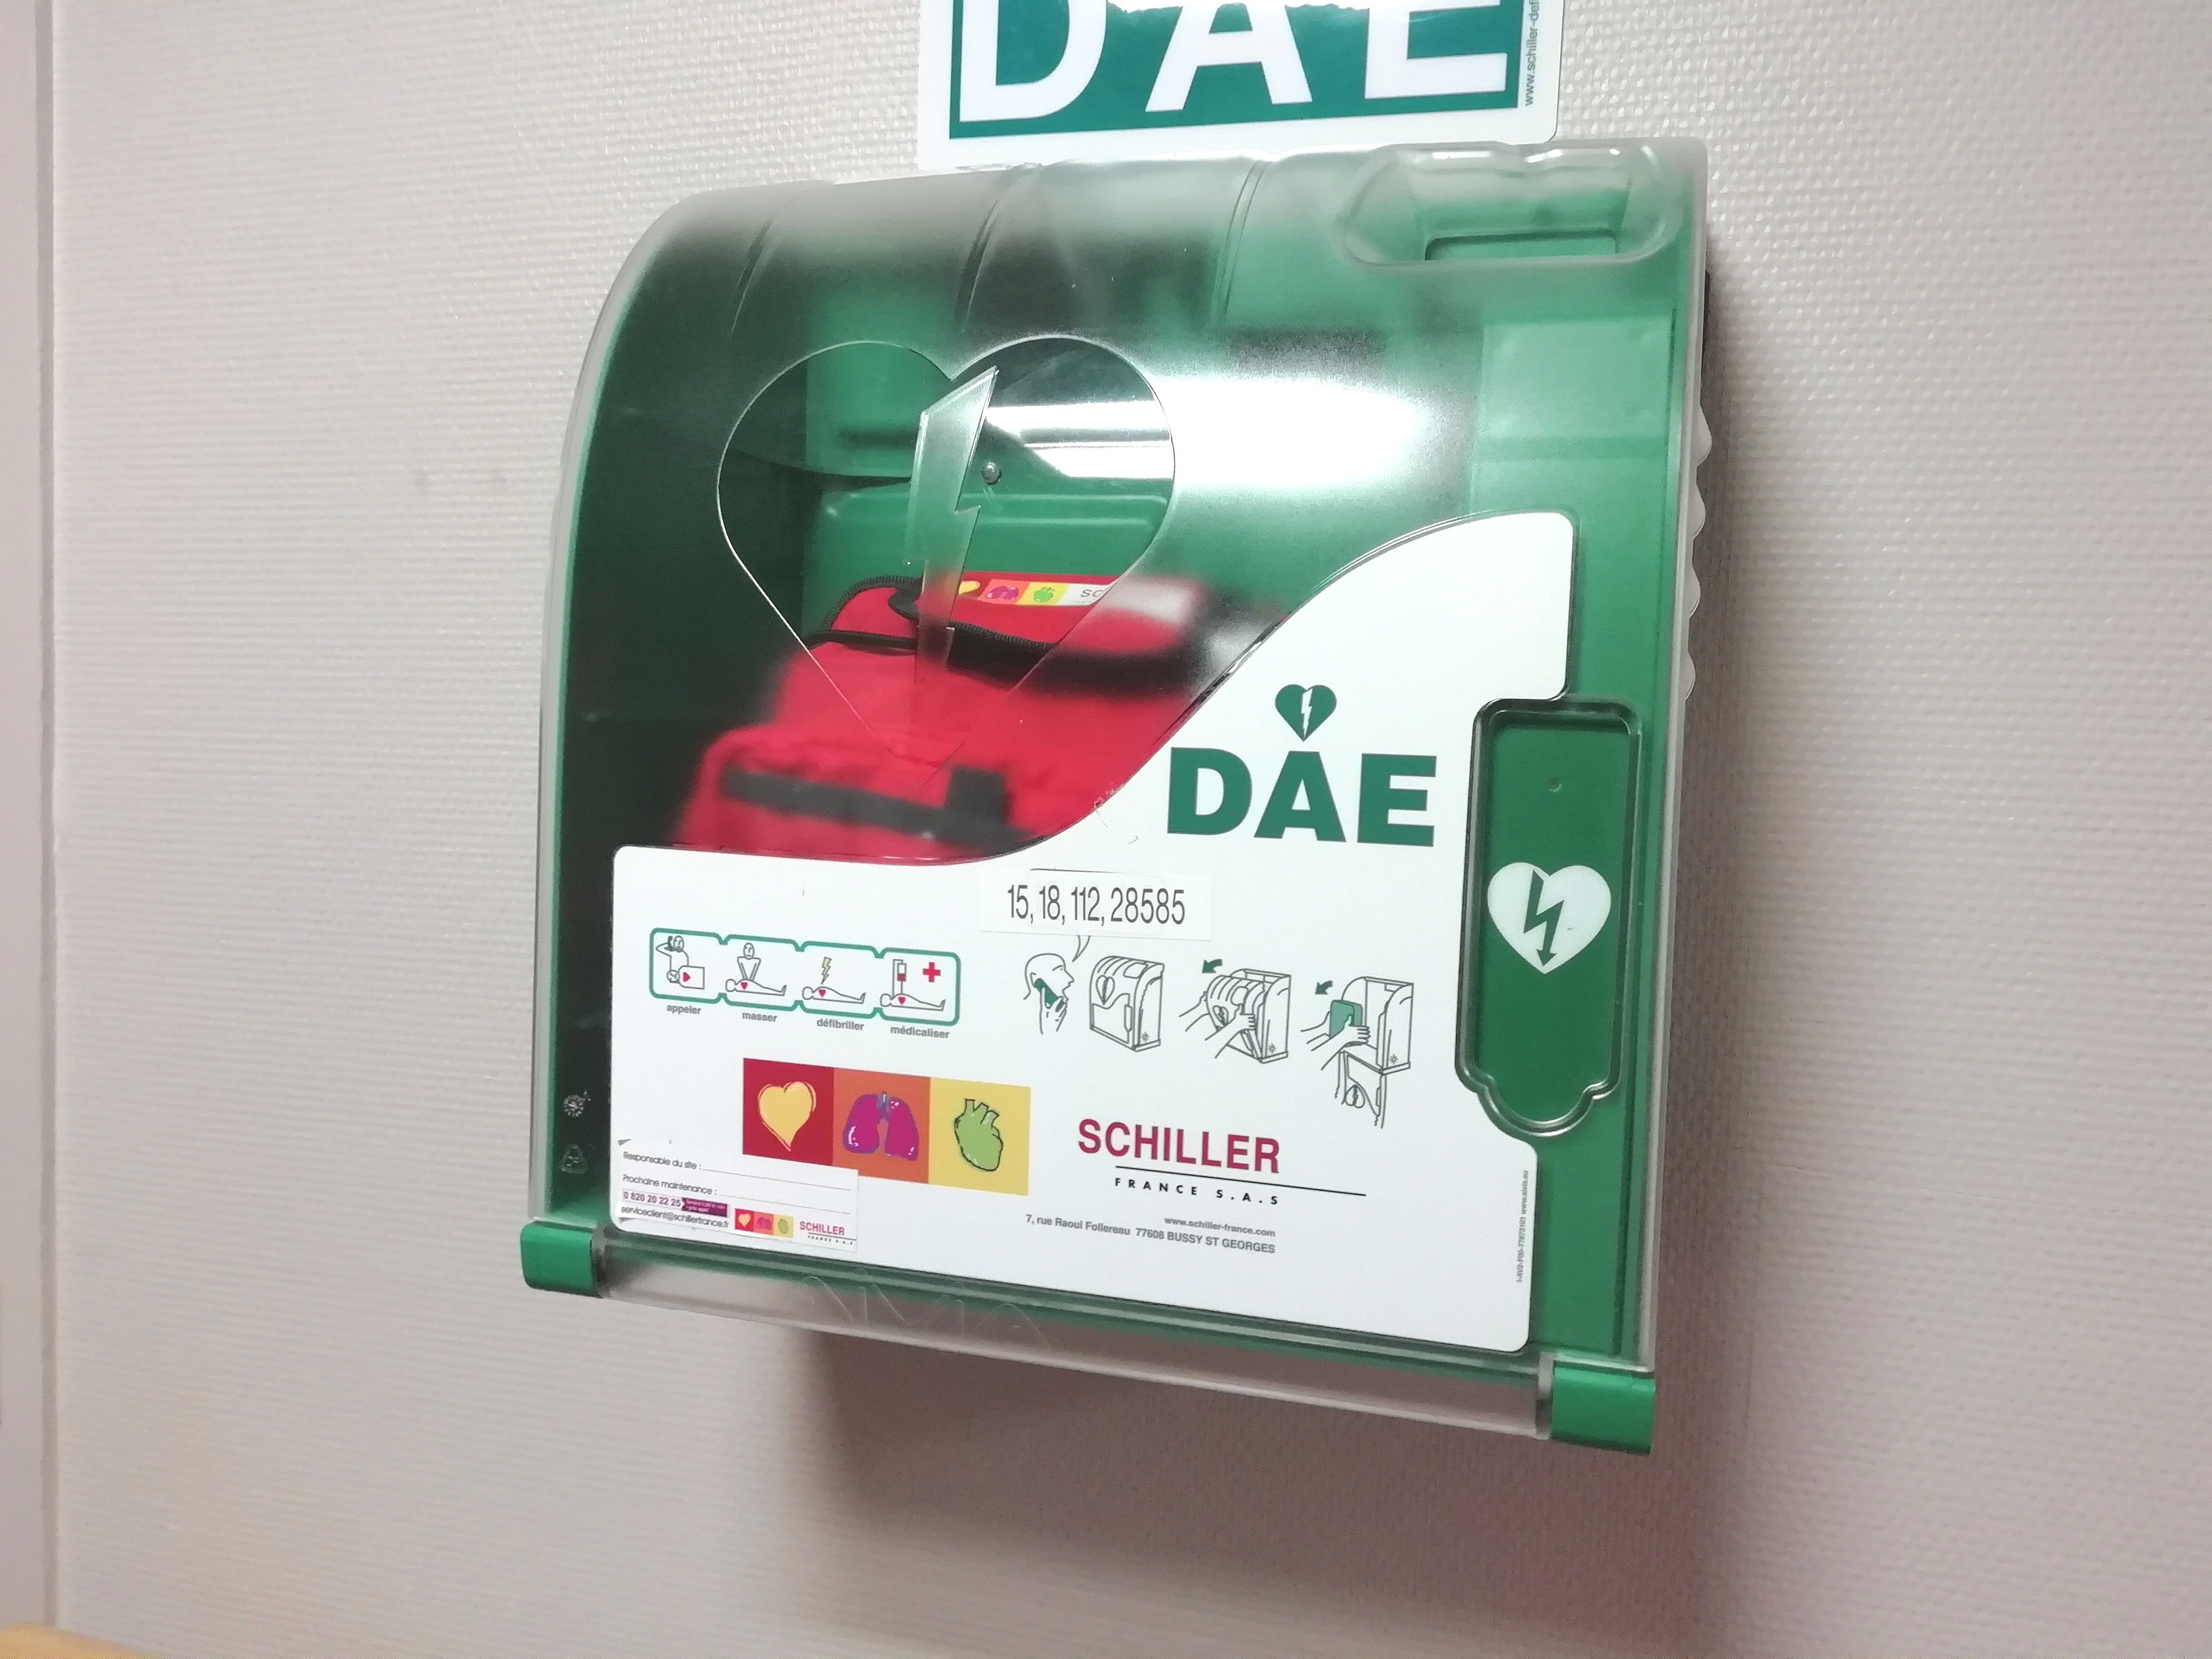 Les défibrillateurs externes automatisés (DEA) représentent un outil crucial pour sauver des vies en cas d'arrêt cardiaque soudain. © Patryssia, Adobe Stock